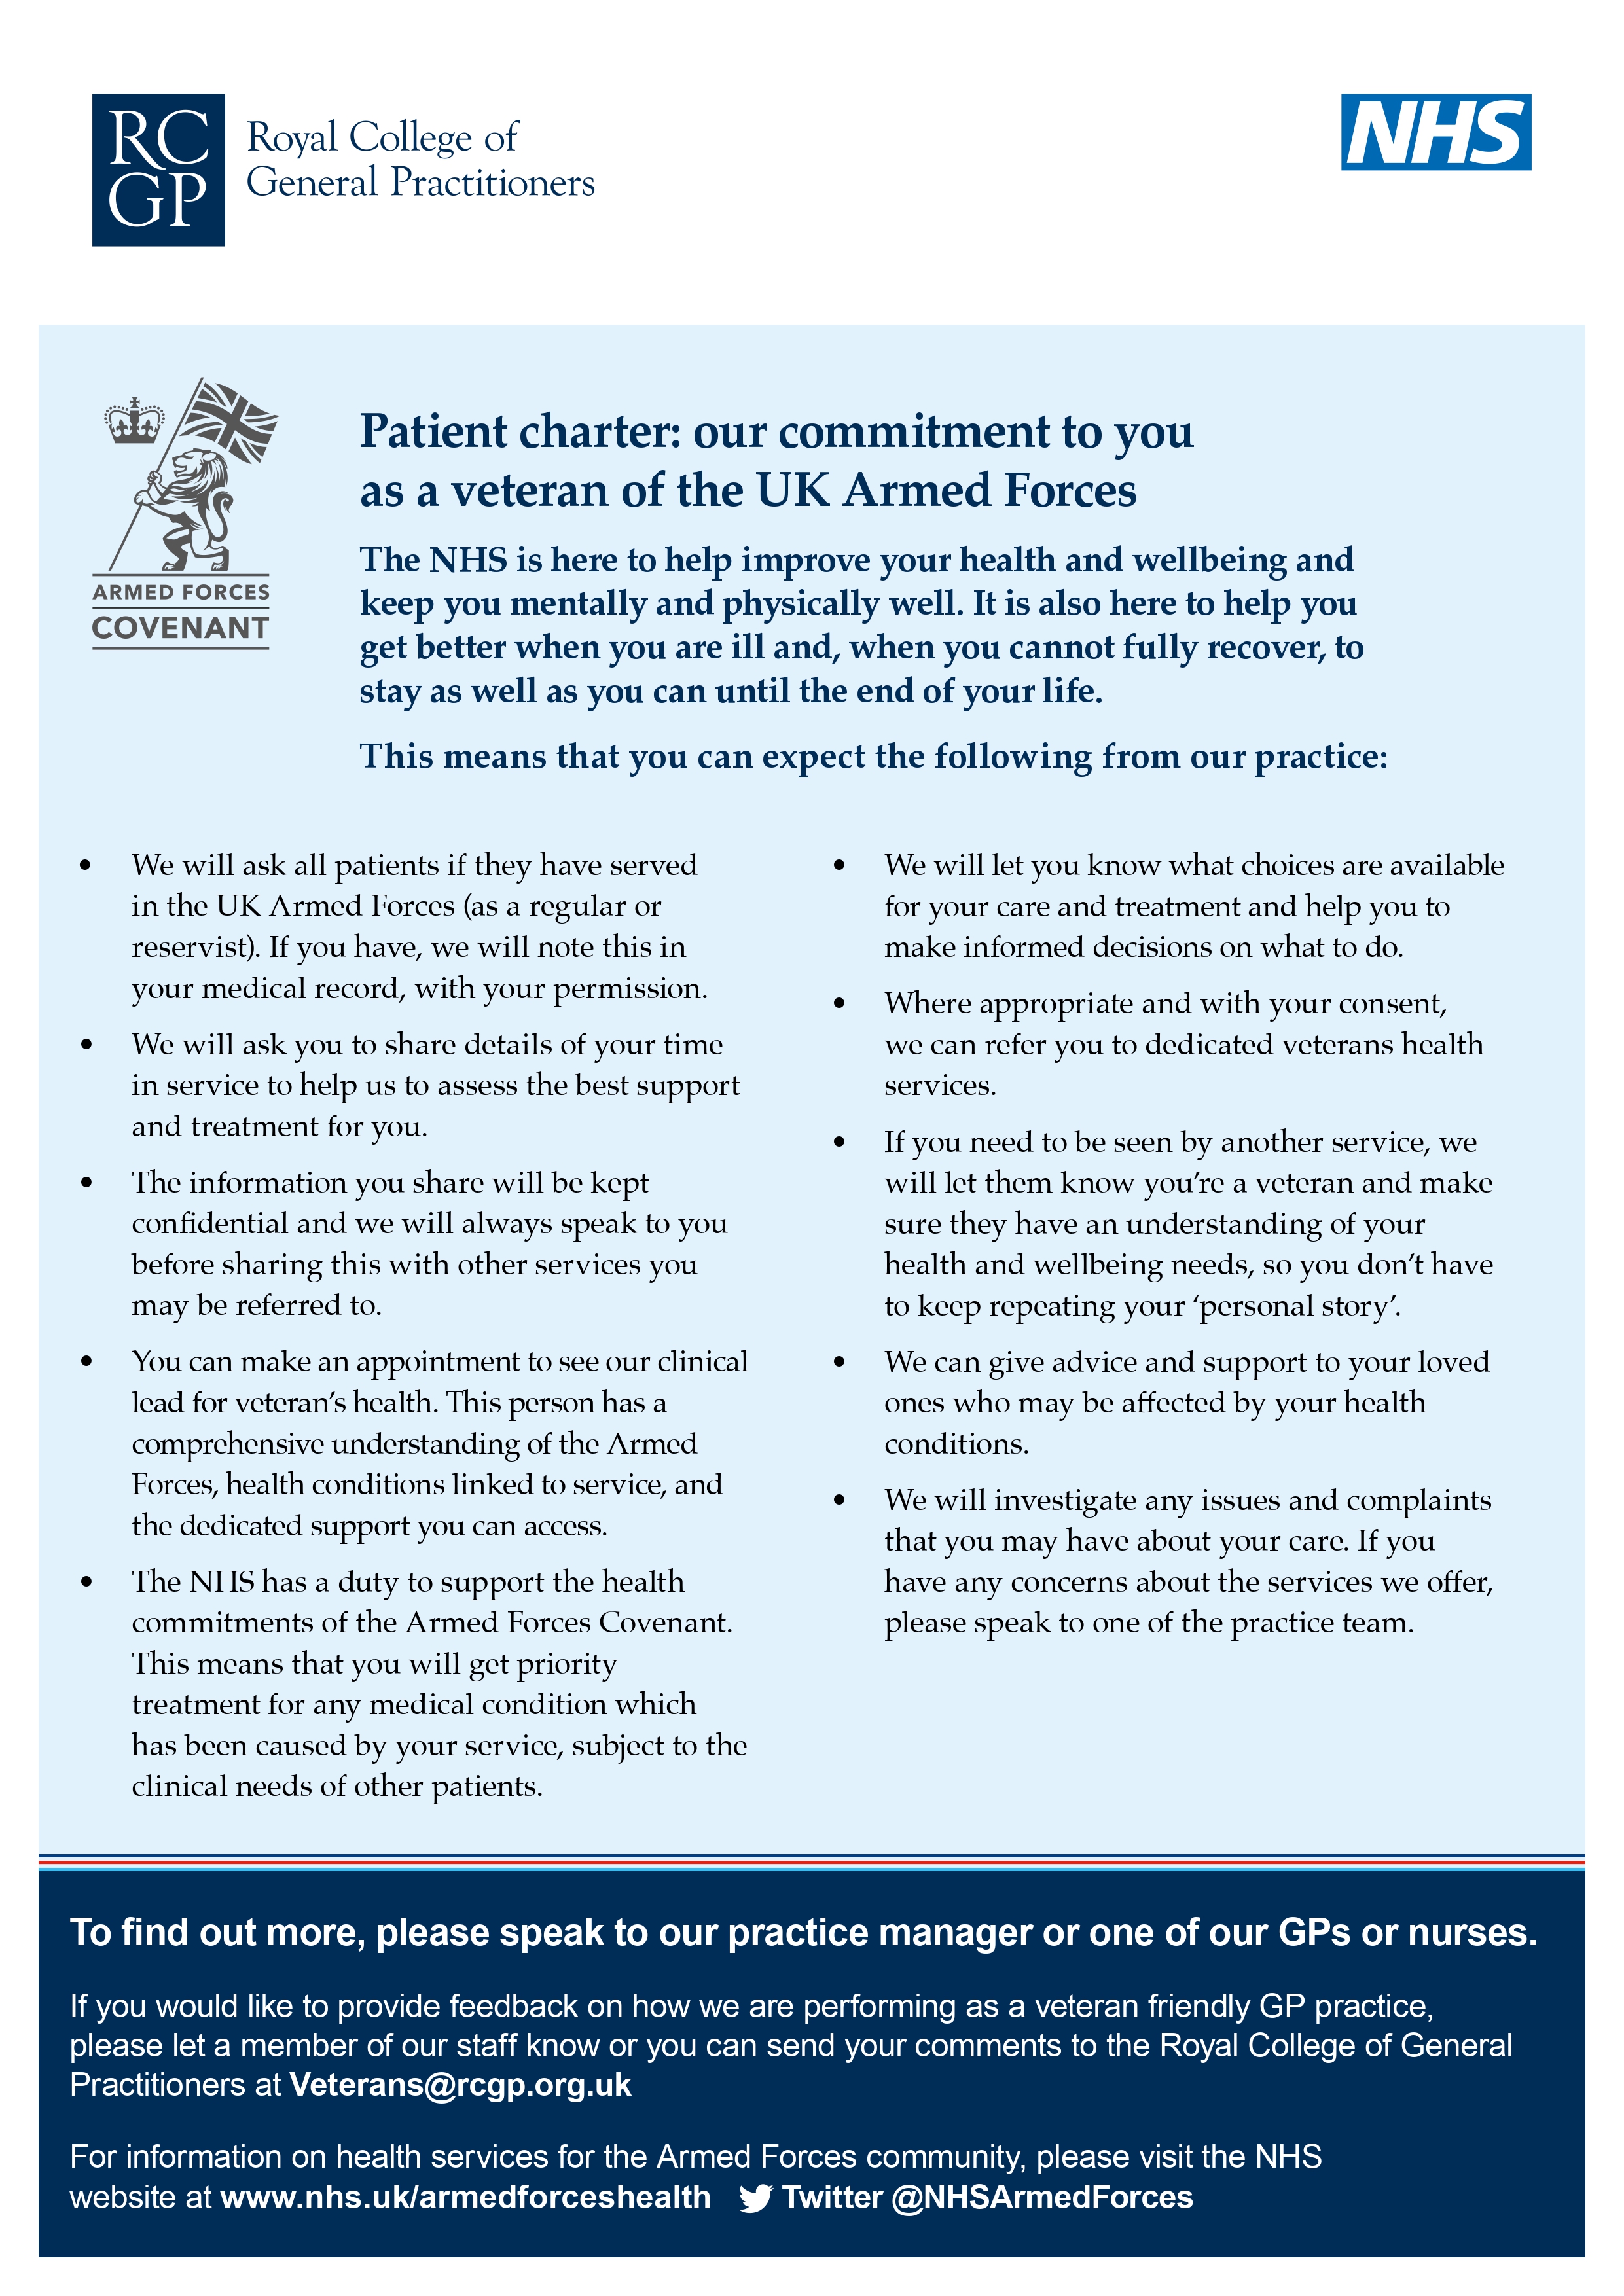 Patient Charter